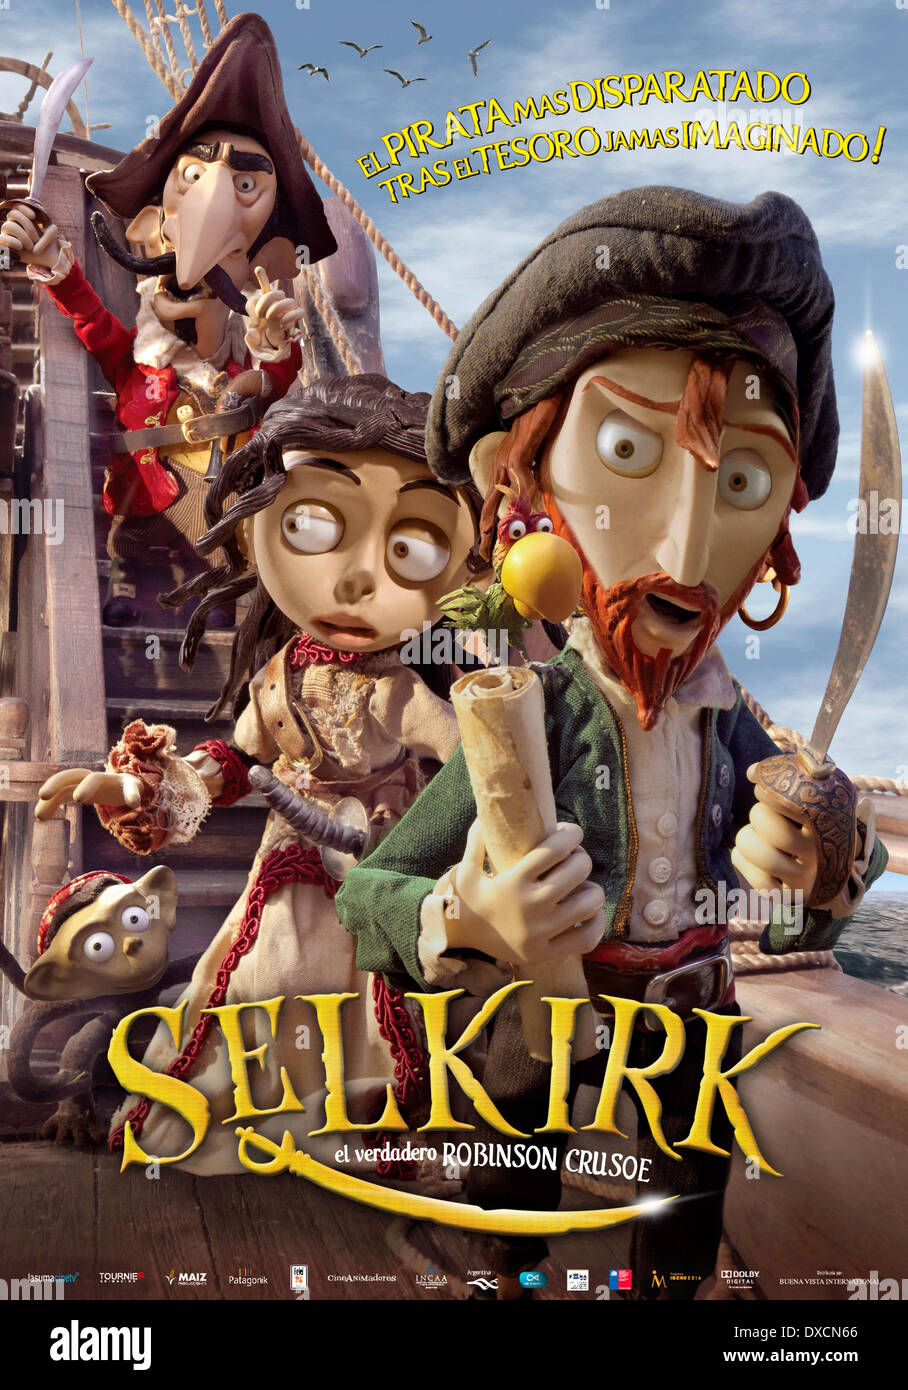 Selkirk, el verdadero Robinson Crusoé Banque D'Images